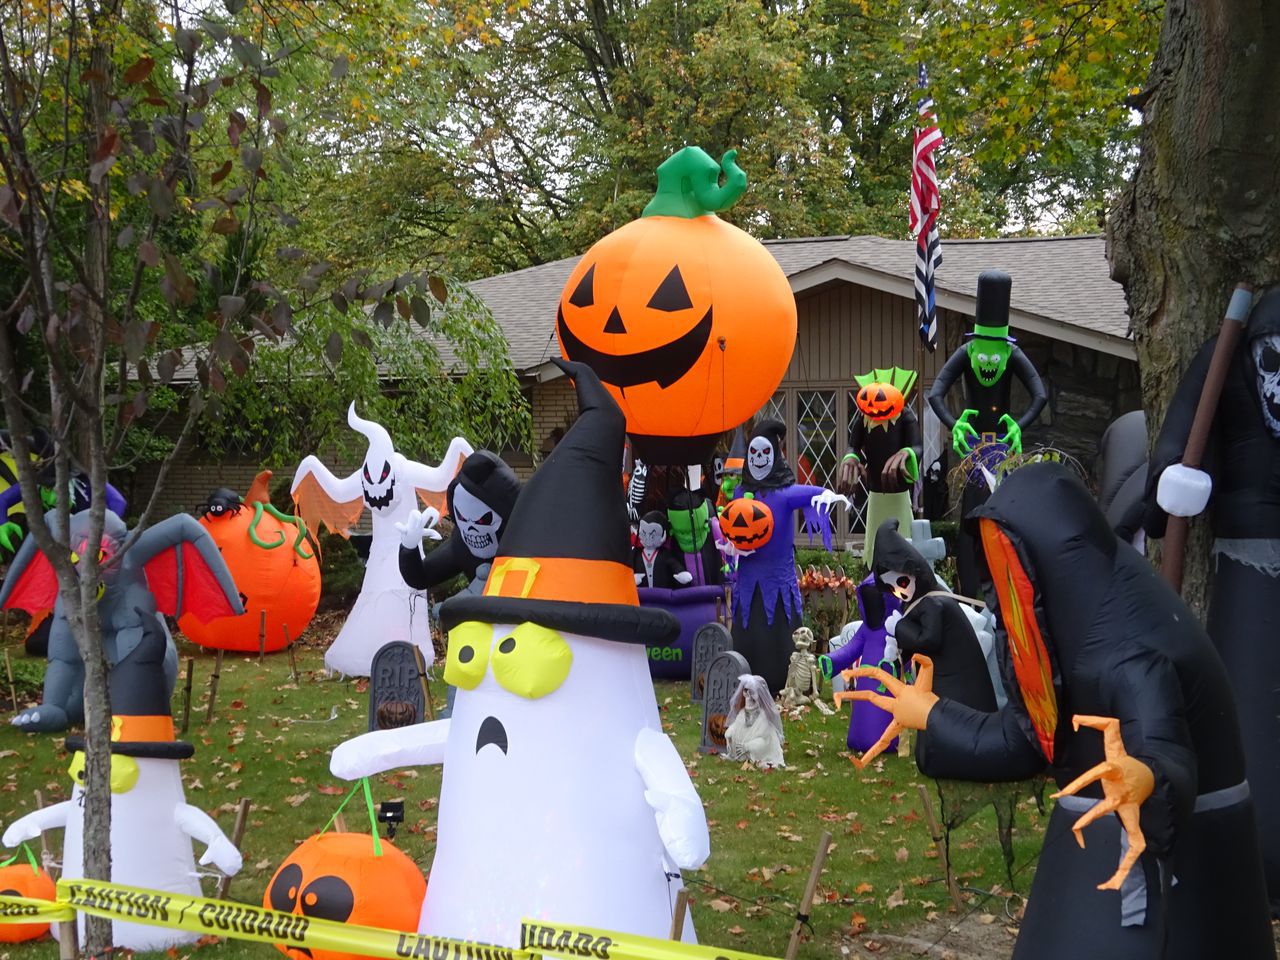 Health Department Discourages Door-To-Door Or 'Trunk' or Treating This Halloween